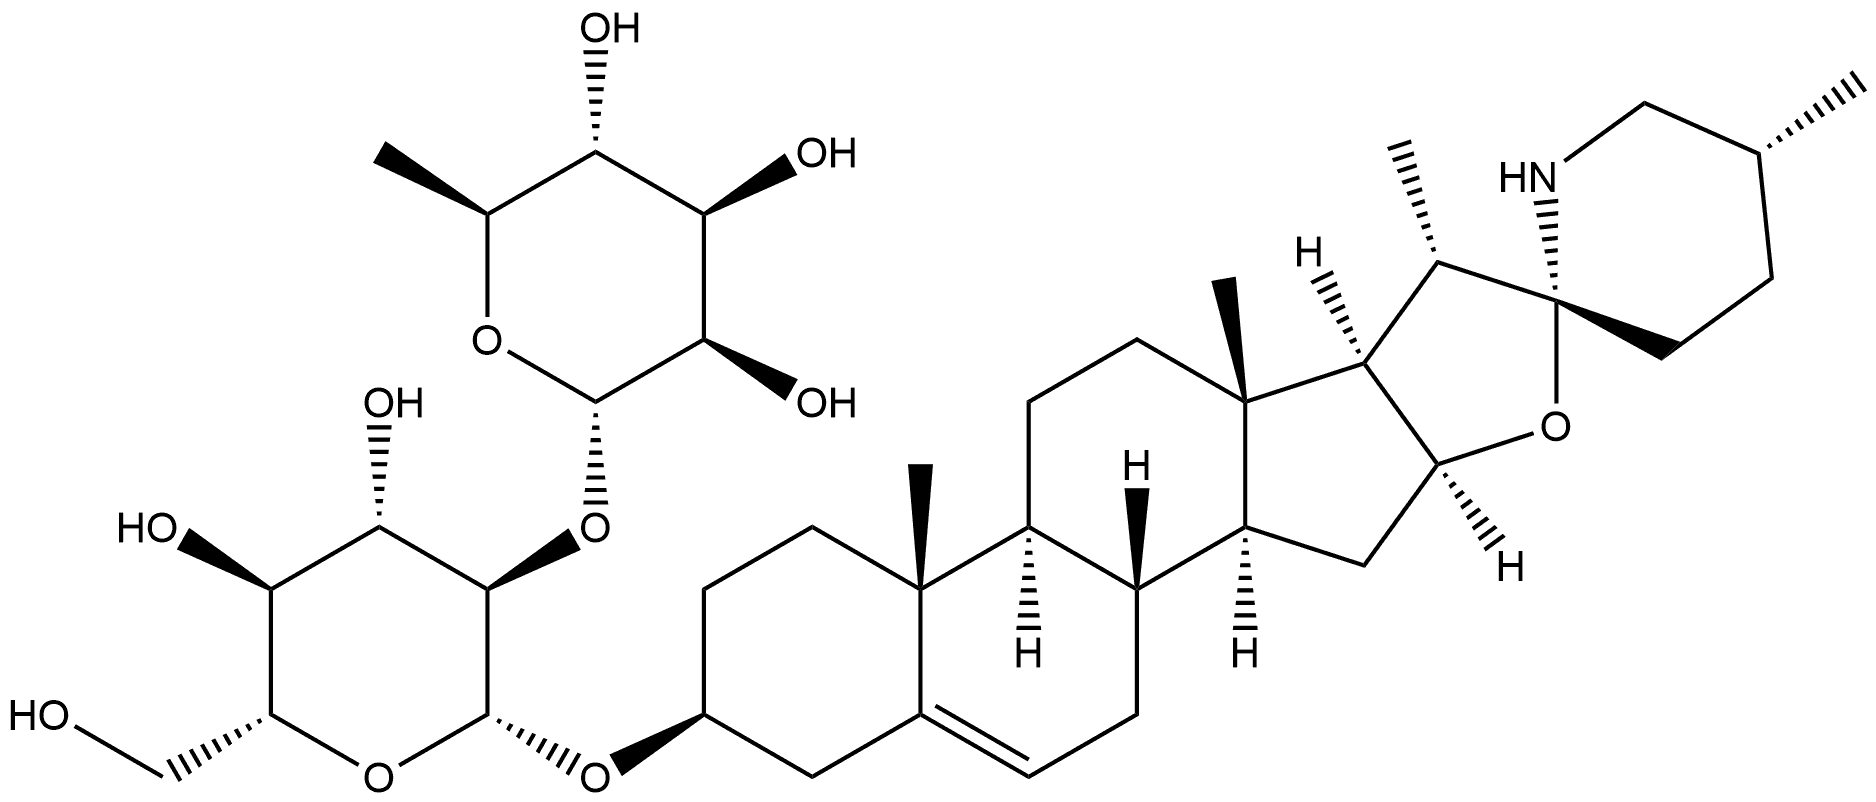 β-D-Glucopyranoside, (3β,22α,25R)-spirosol-5-en-3-yl 2-O-(6-deoxy-α-L-mannopyranosyl)-